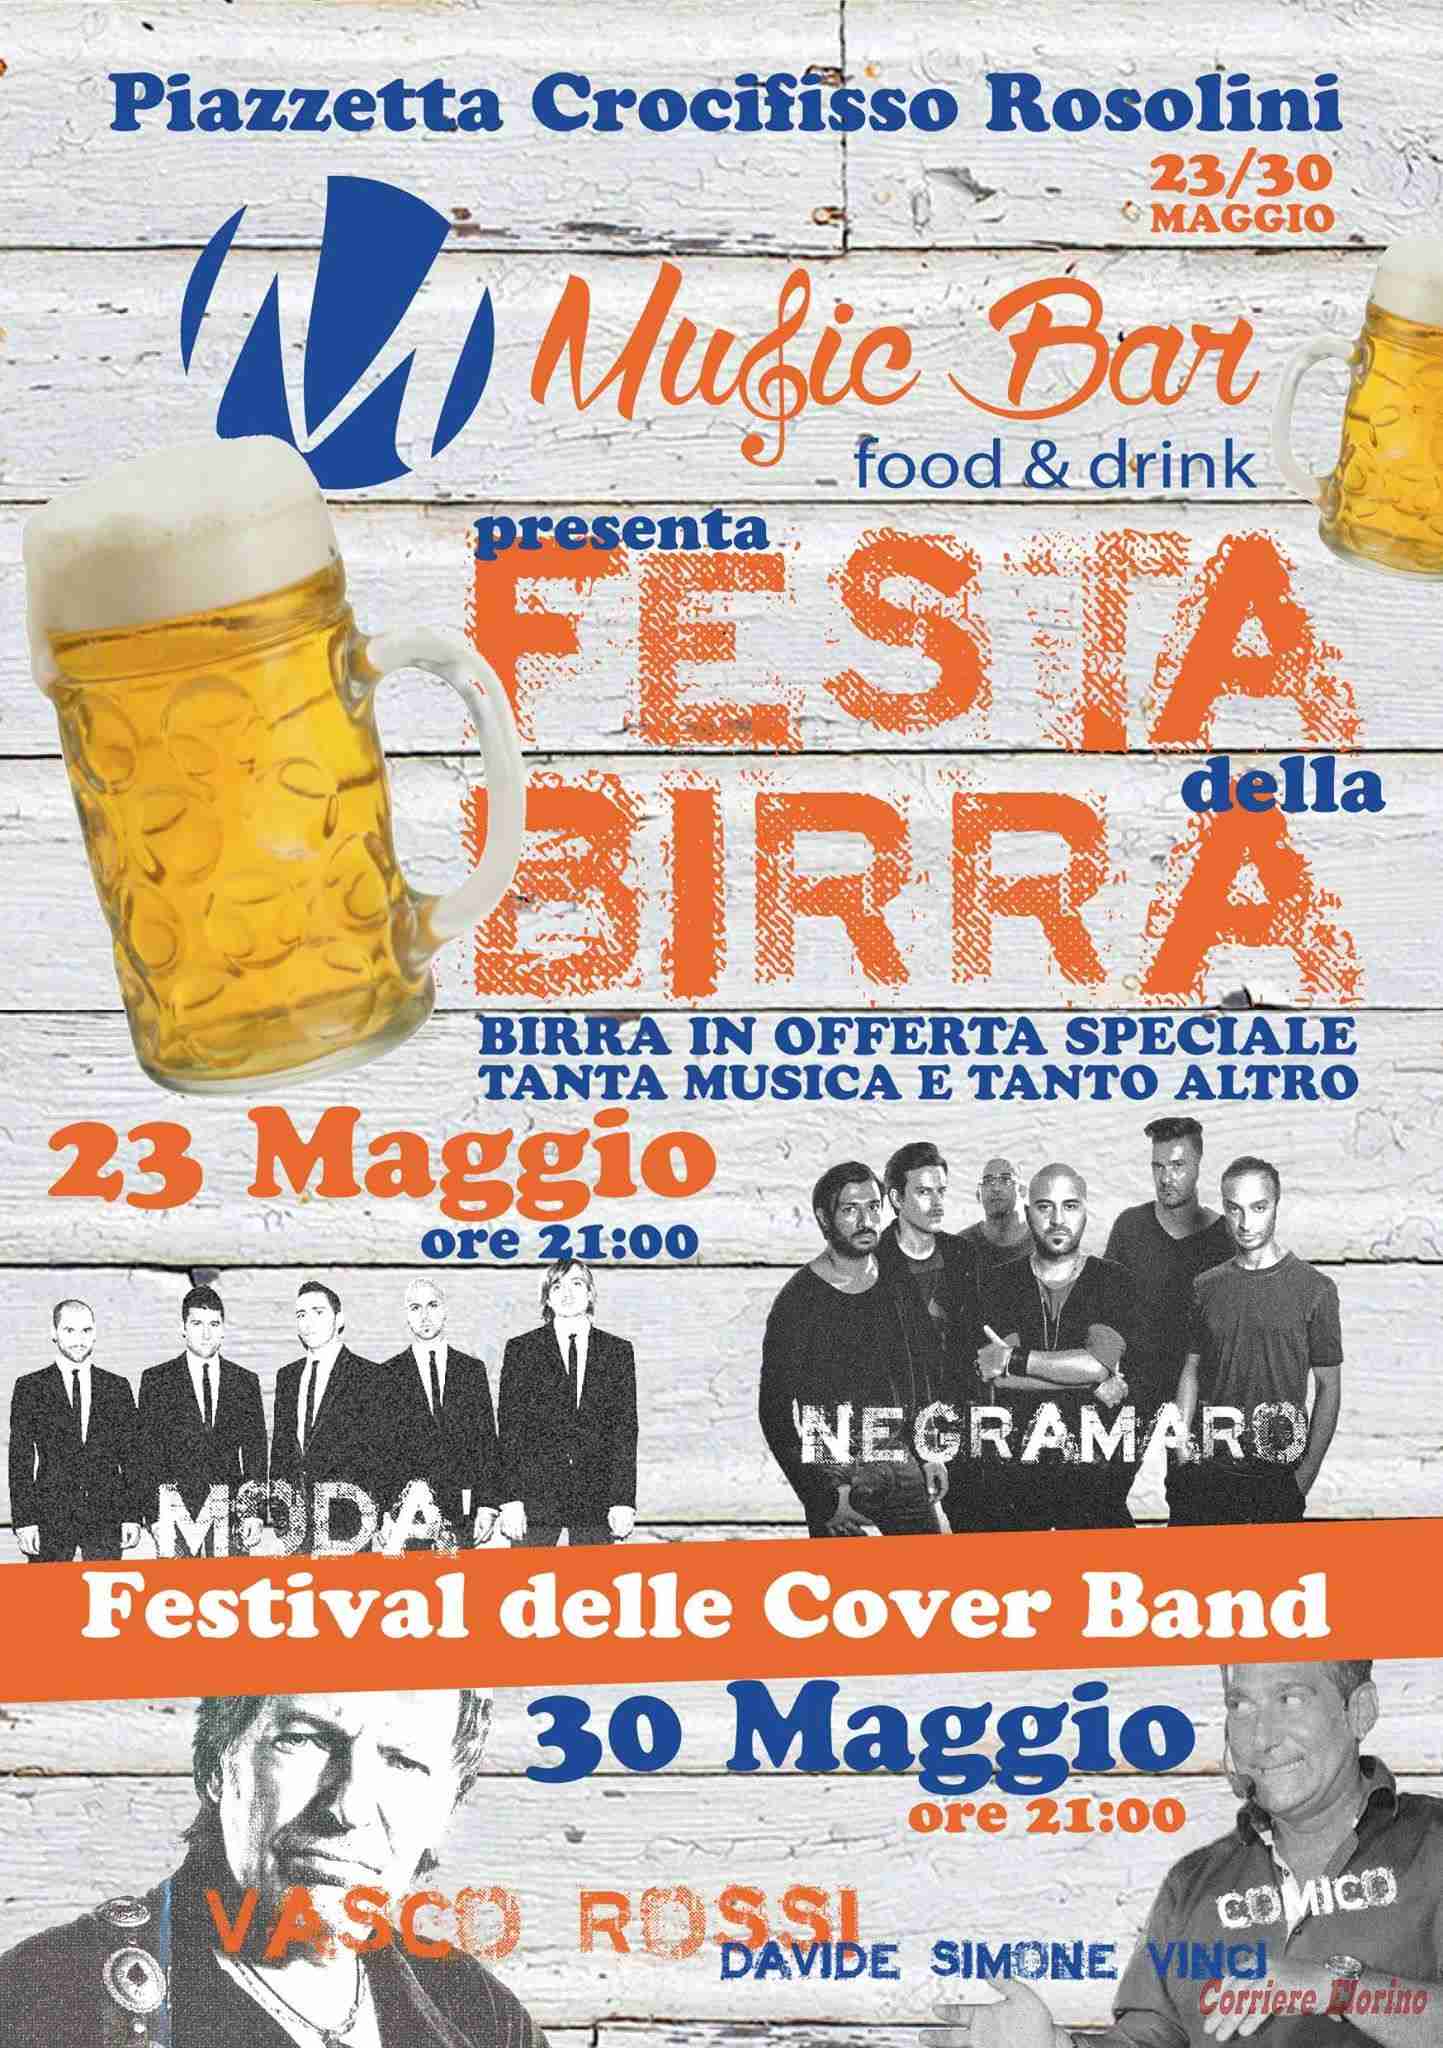 “Festa della birra” il 23 e 30 maggio al Music Bar, in piazza Crocifisso